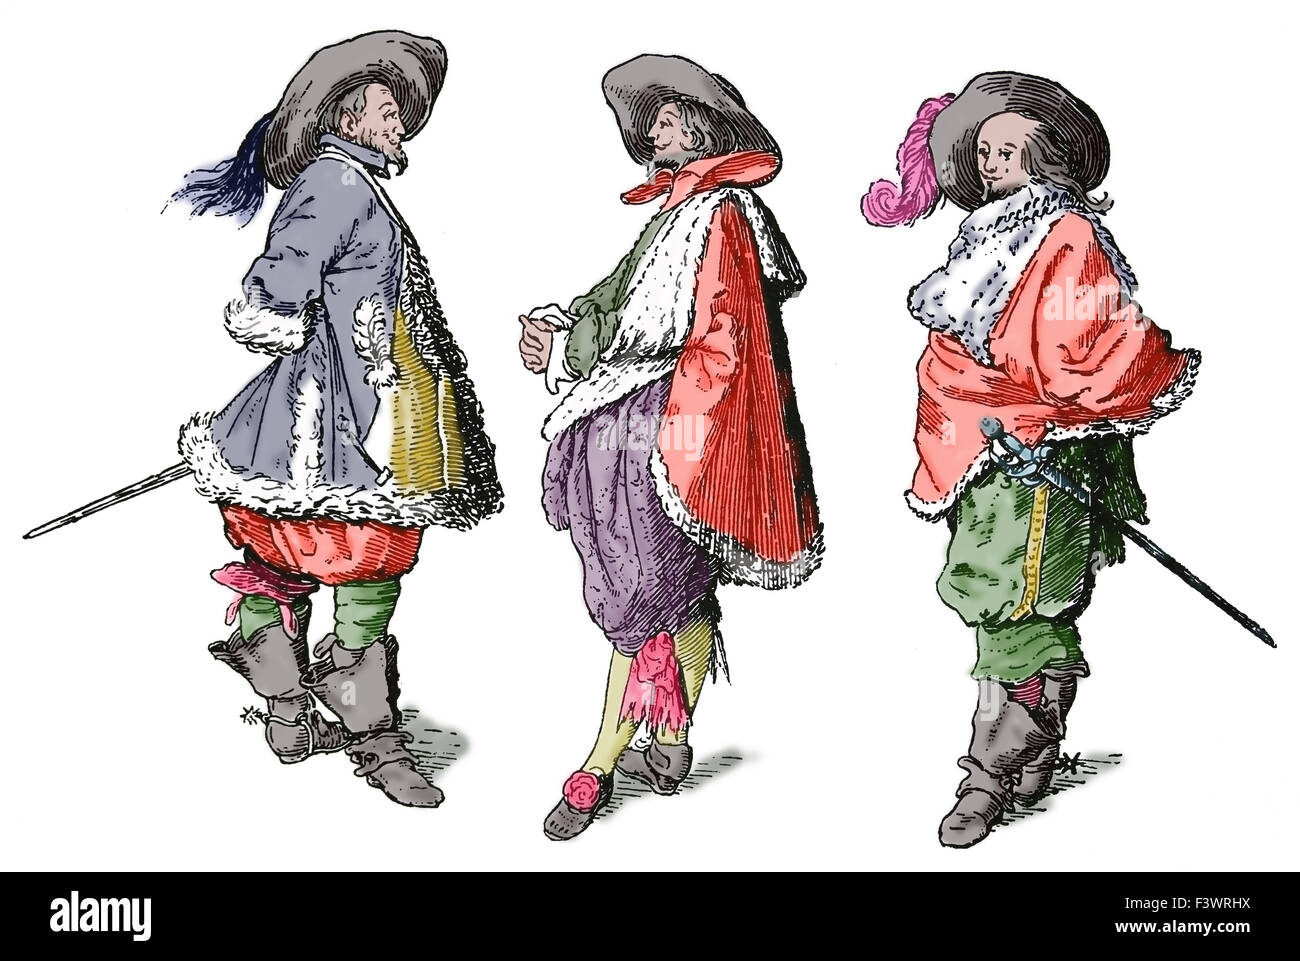 Europa. 17. Jahrhundert. Französische Adlige in modische Kleidung. Kupferstich, 19. Jahrhundert. Spätere Färbung. Stockfoto